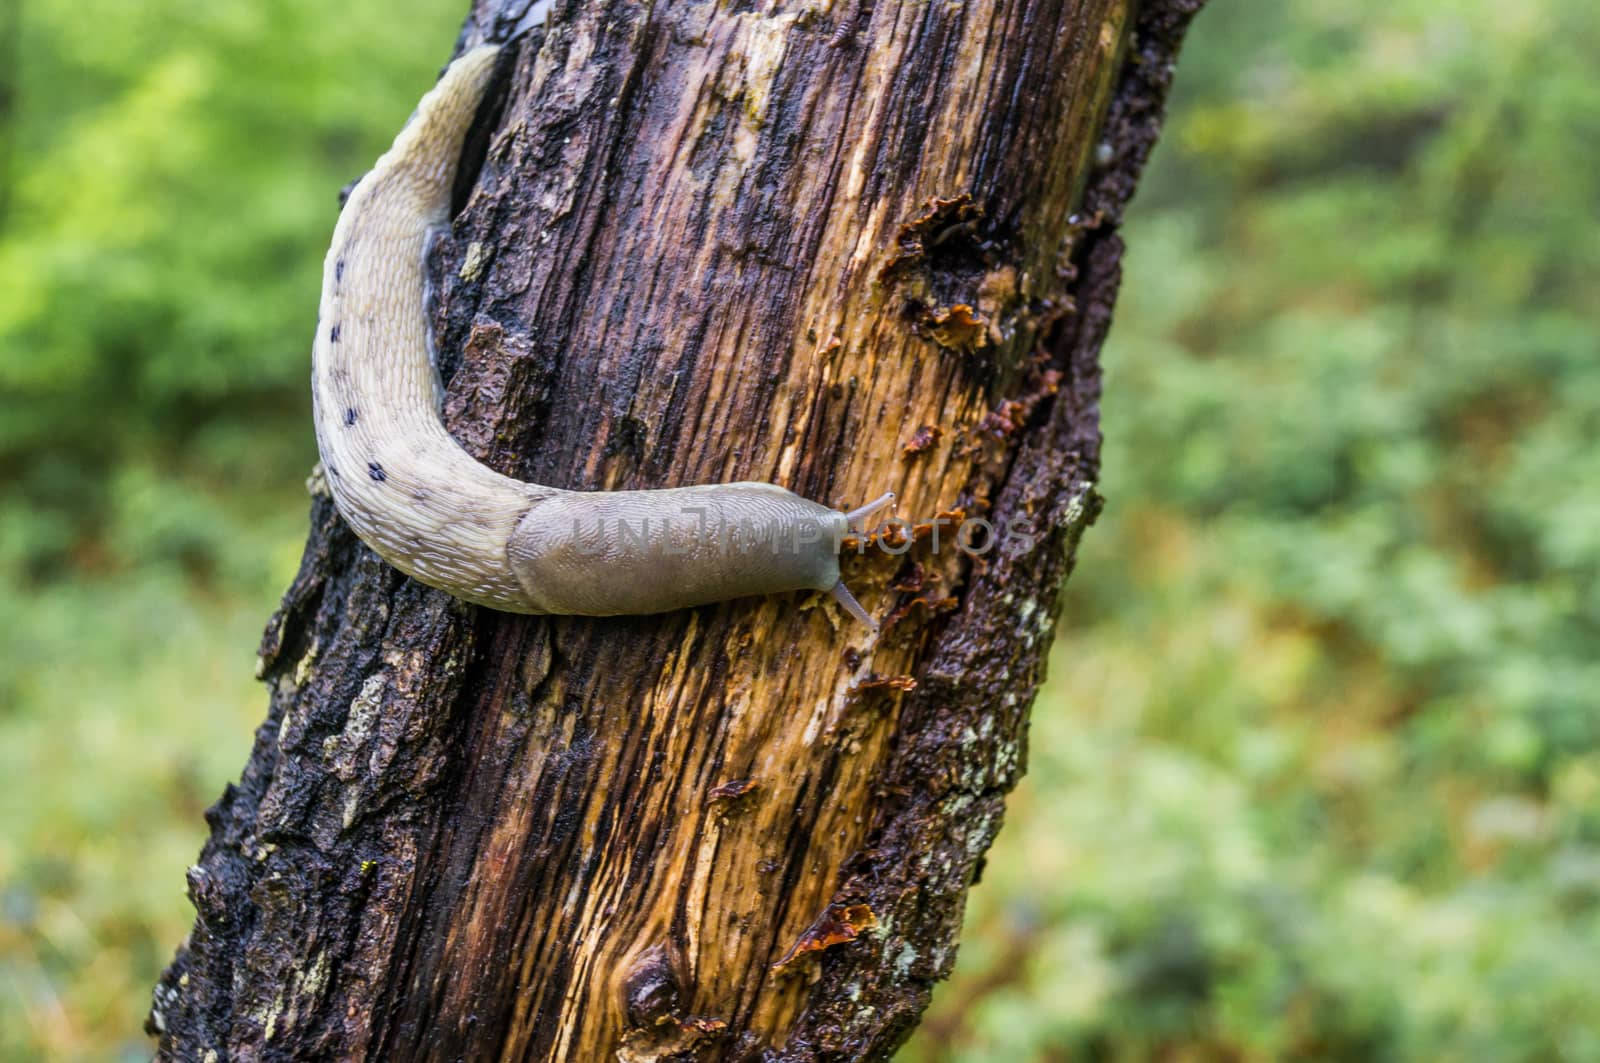 Slug climbing a tree by bignoub